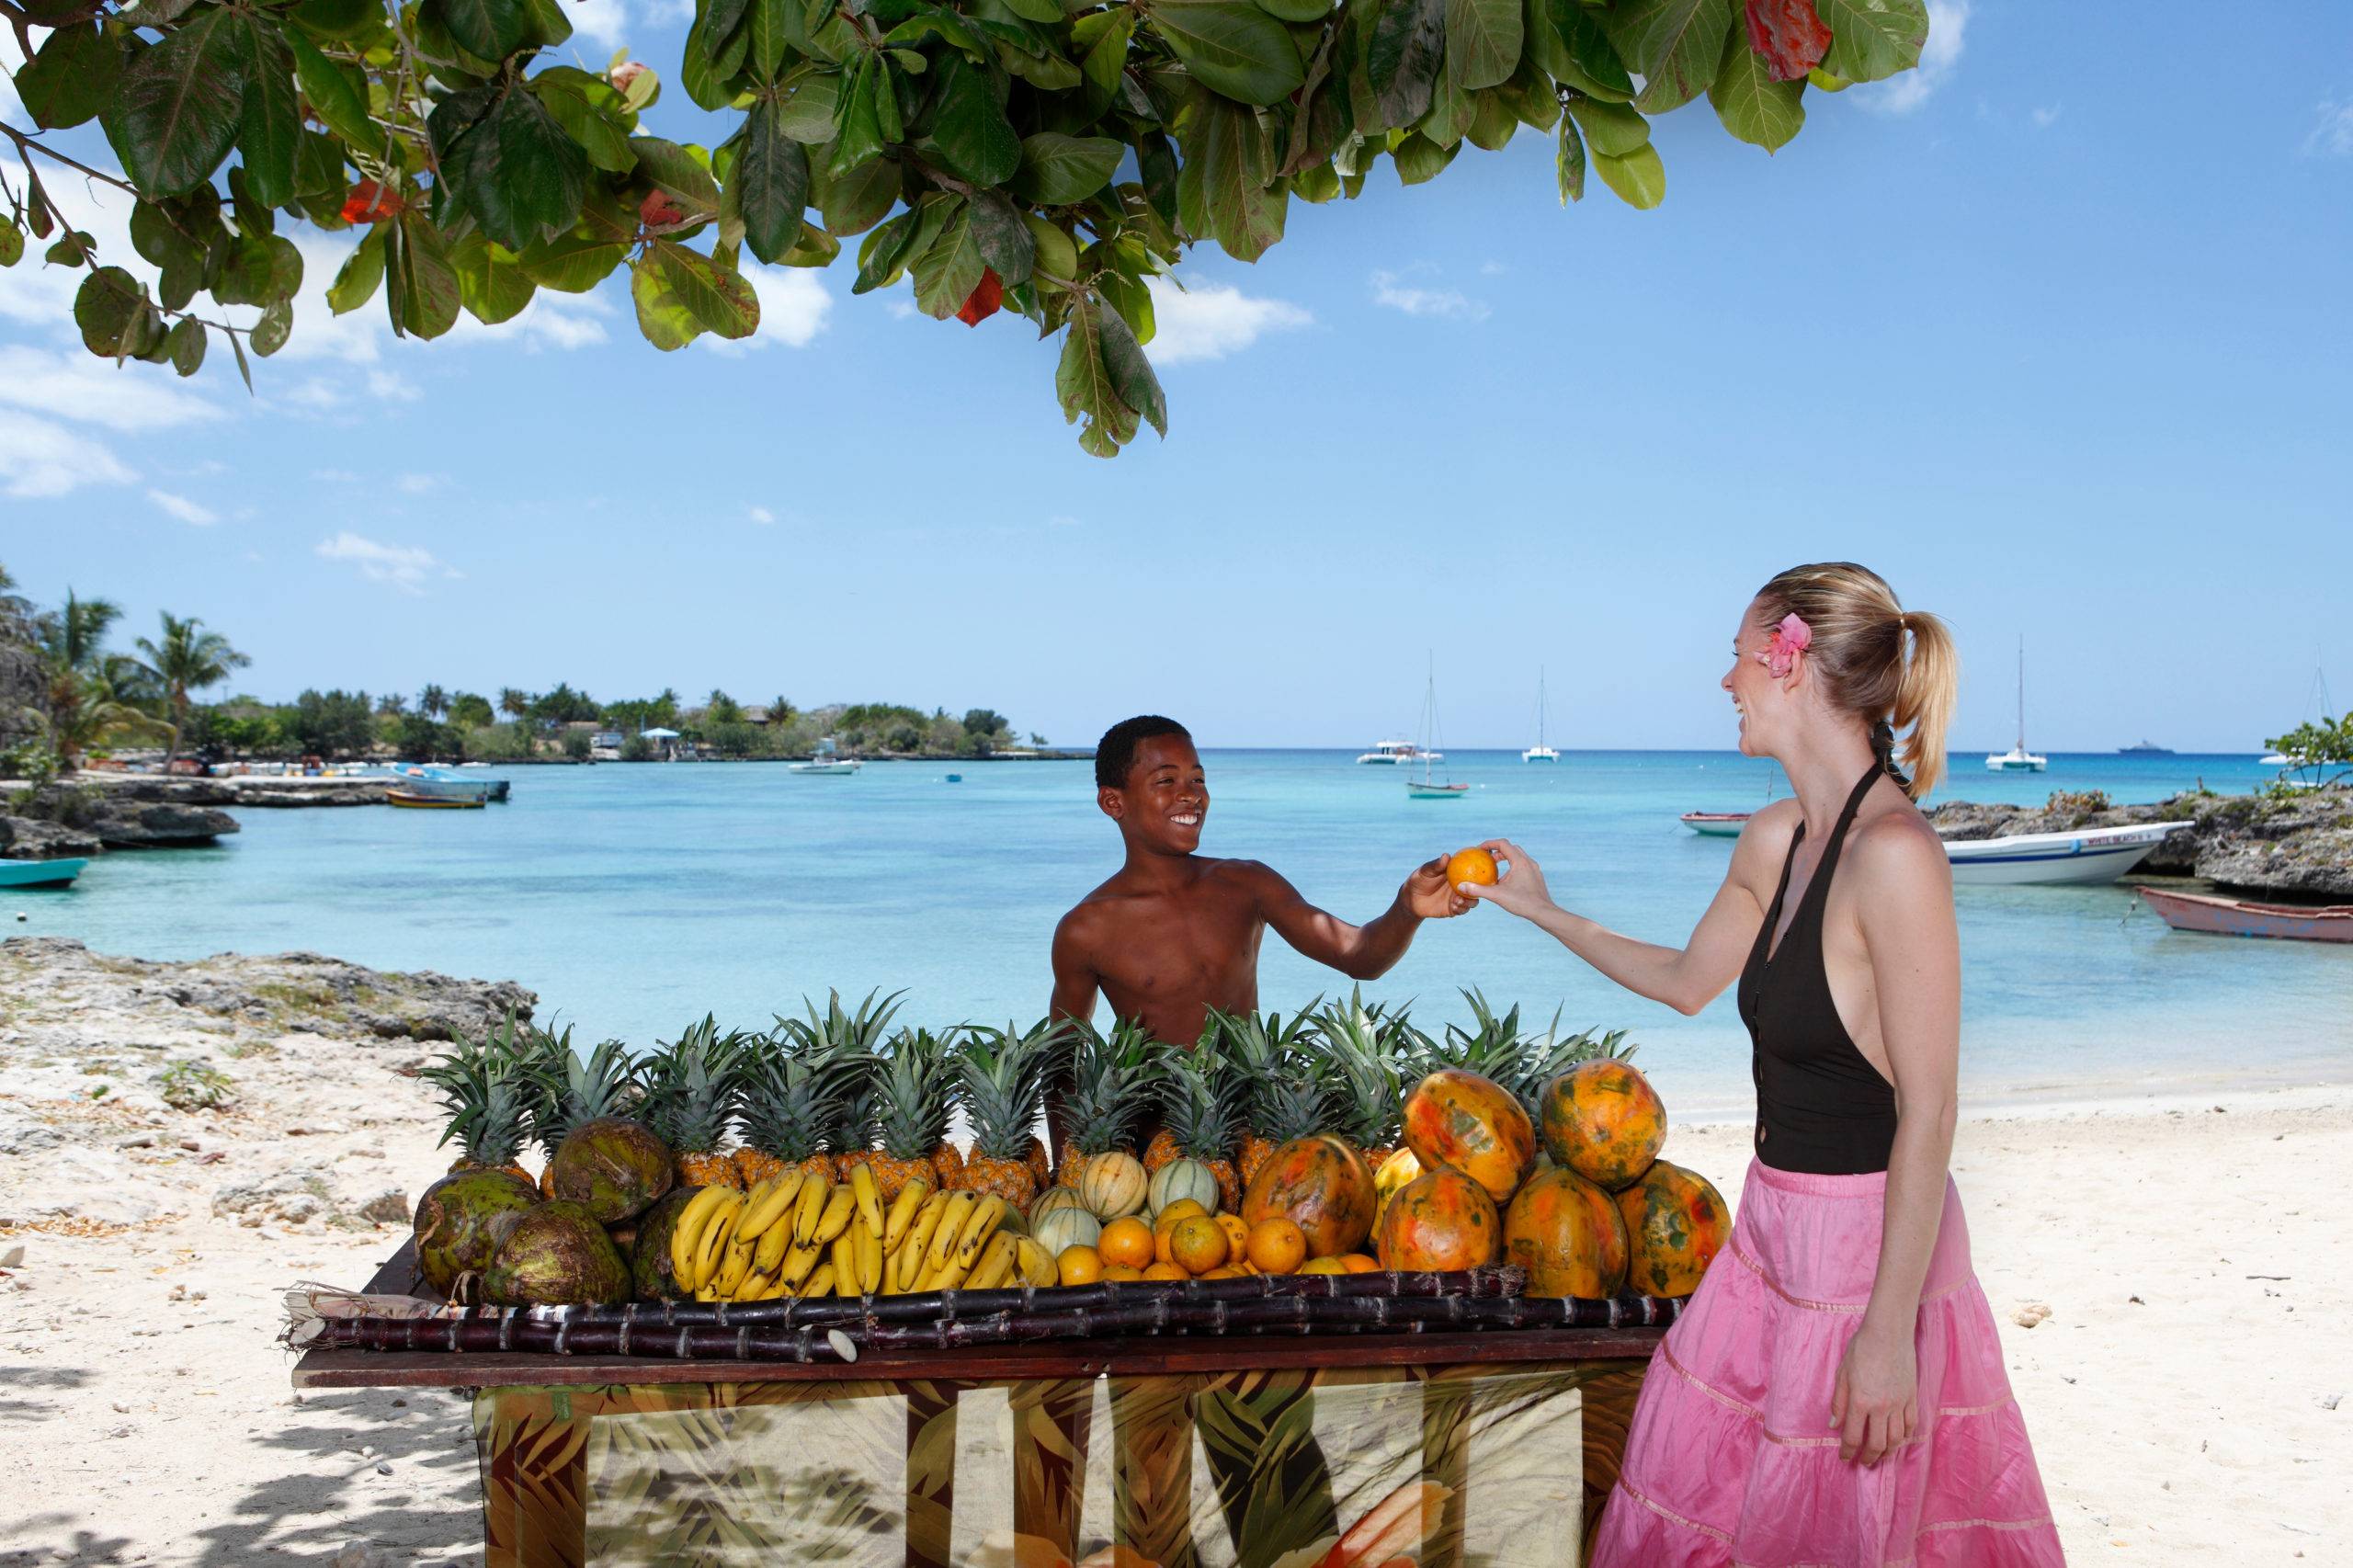 Доминикана: какие опасности могут подстерегать, советы туристам